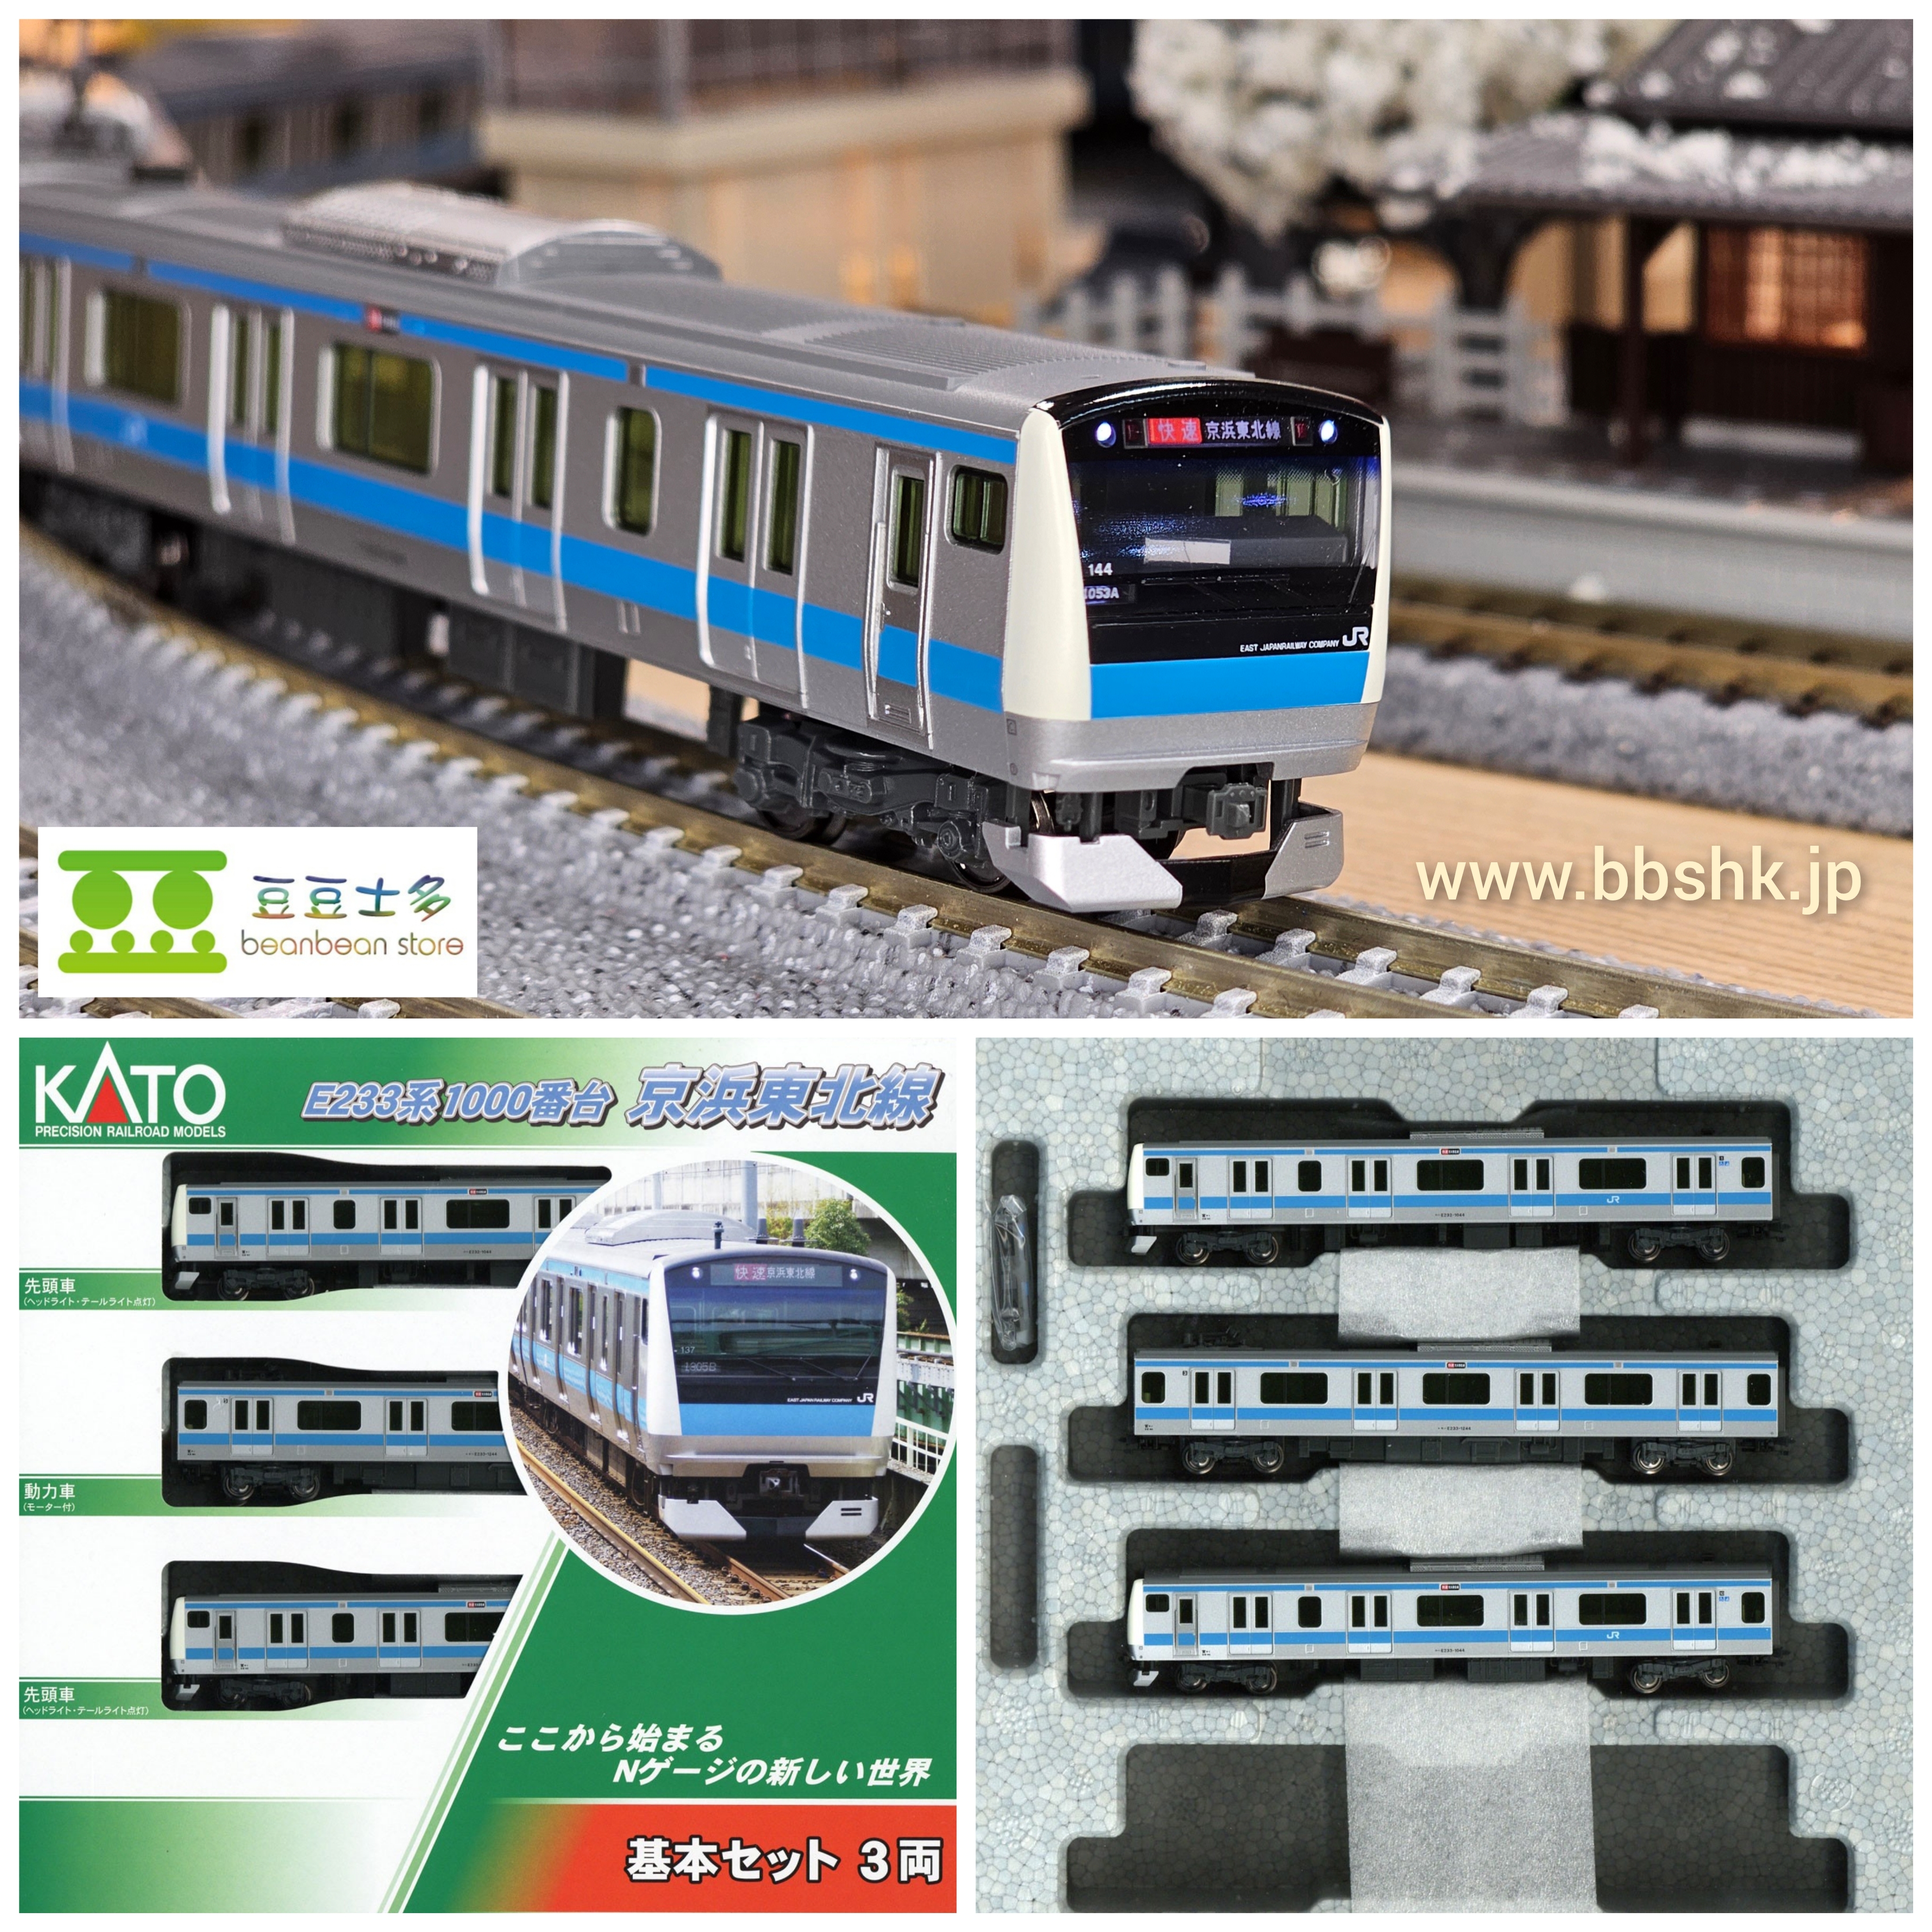 カトー (N) 10-1826 E233系1000番台 基本セット(3両) 京浜東北線 返品